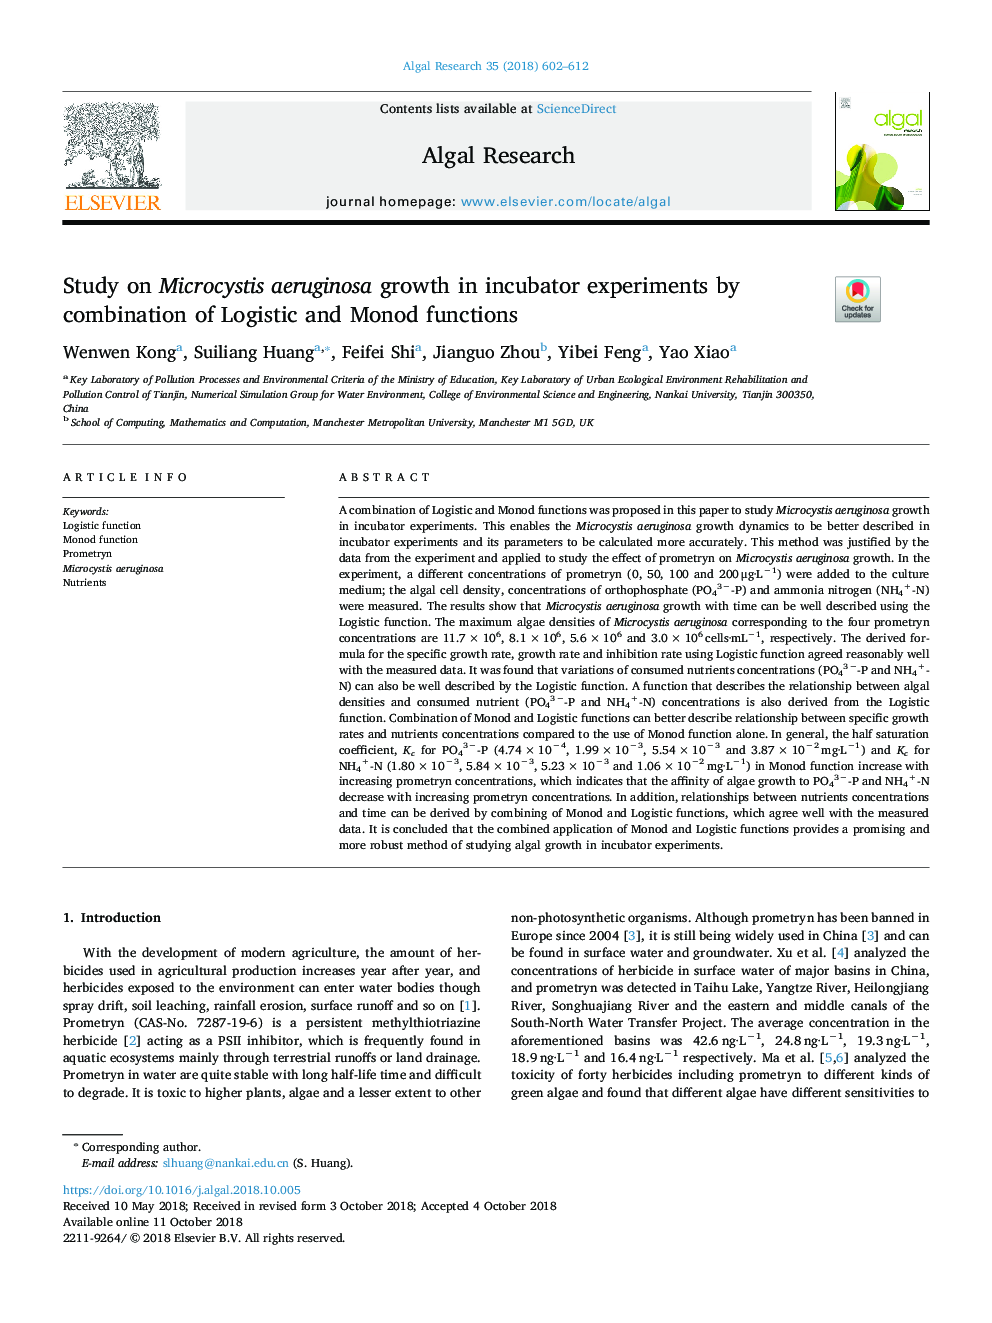 بررسی رشد میکروزیستی آئروژینوزا در آزمایش های انکوباتور با ترکیبی از توابع لجستیک و مونود